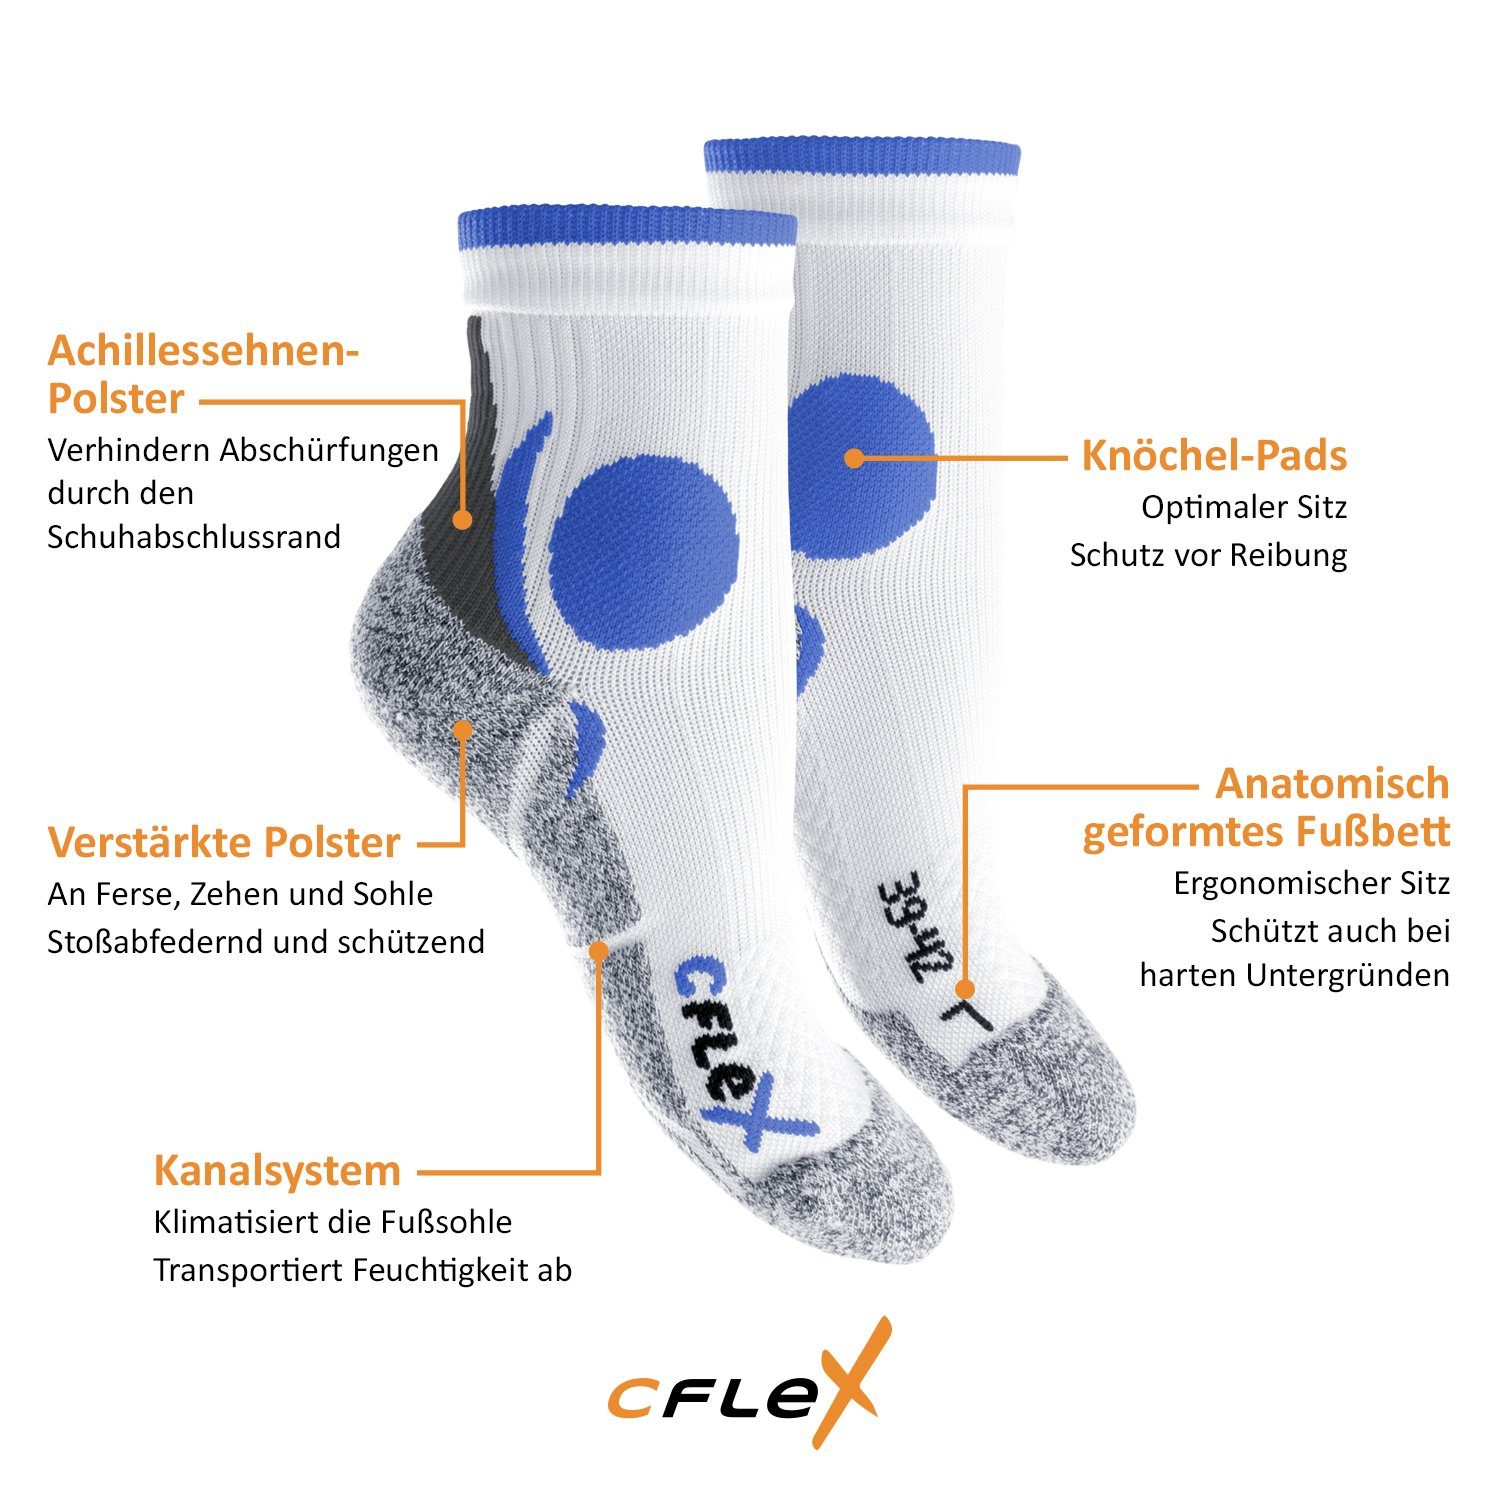 CFLEX Schwarz/Grün Laufsocken Sportsocken Running Damen Paar) (4 Herren und Funktions-Socken